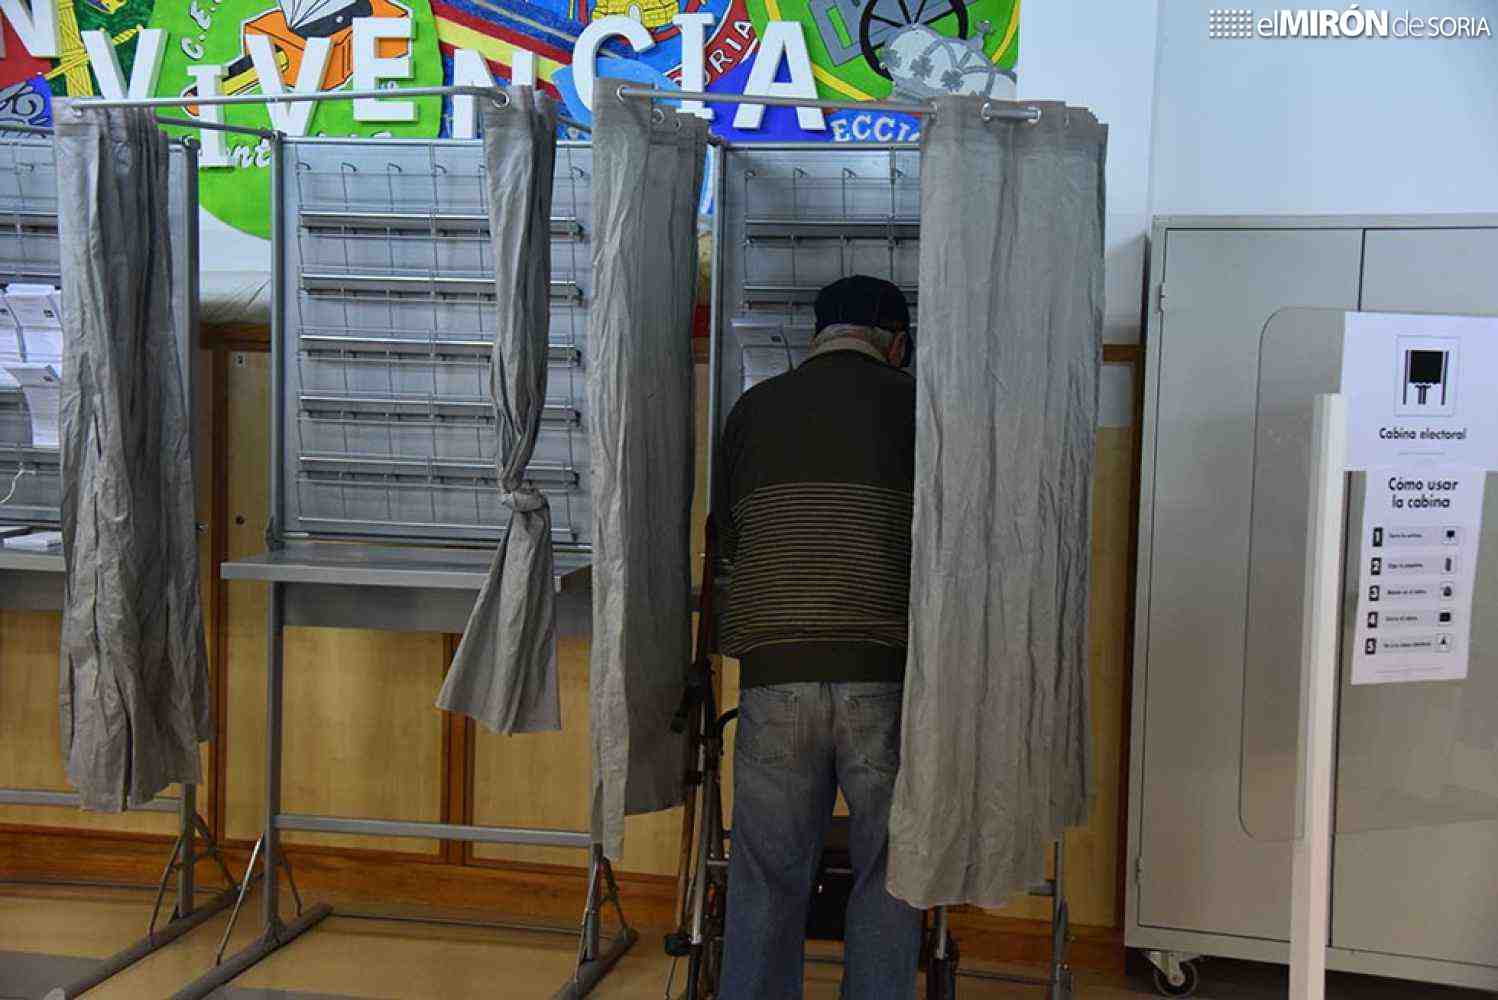 TRIBUNA / No votar no es votar que no